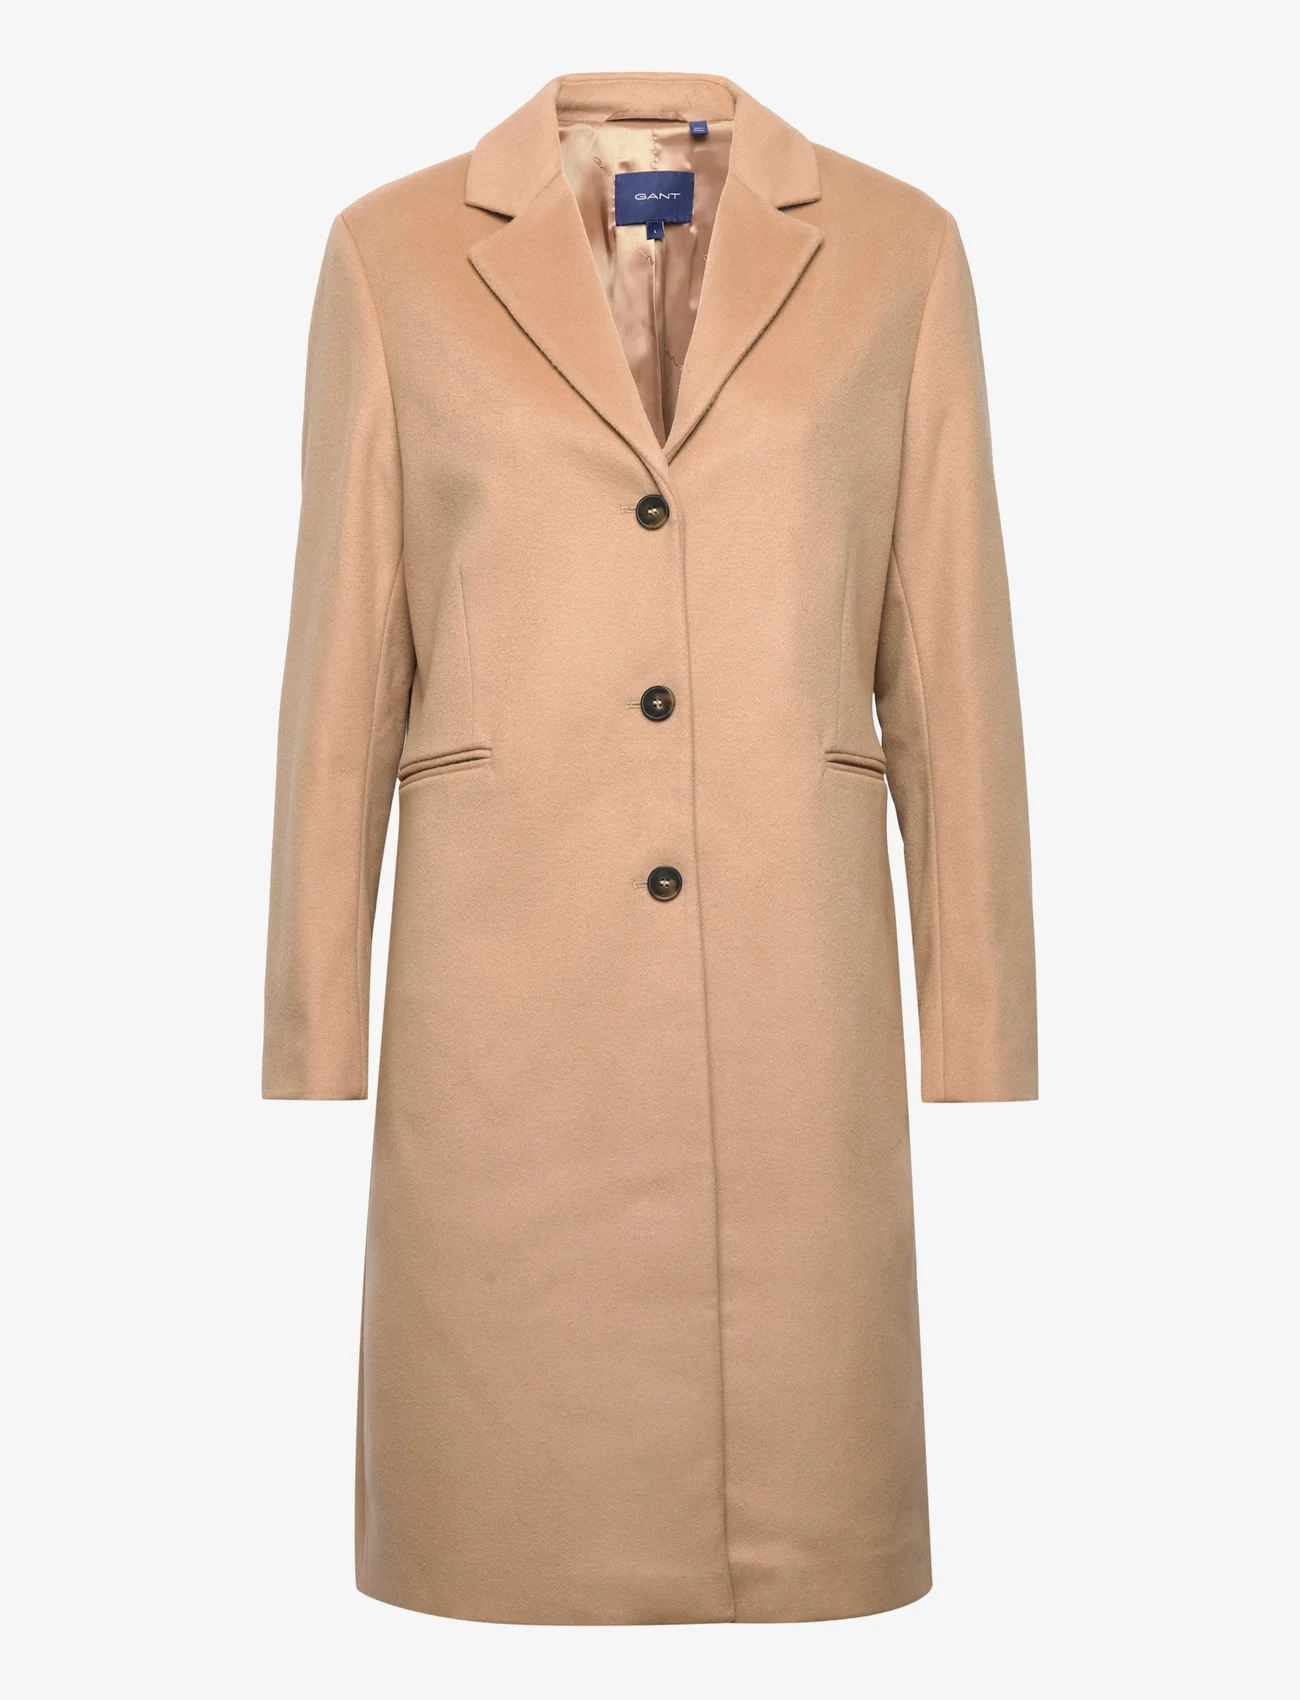 GANT - WOOL BLEND TAILORED COAT - winter coats - dark khaki - 0